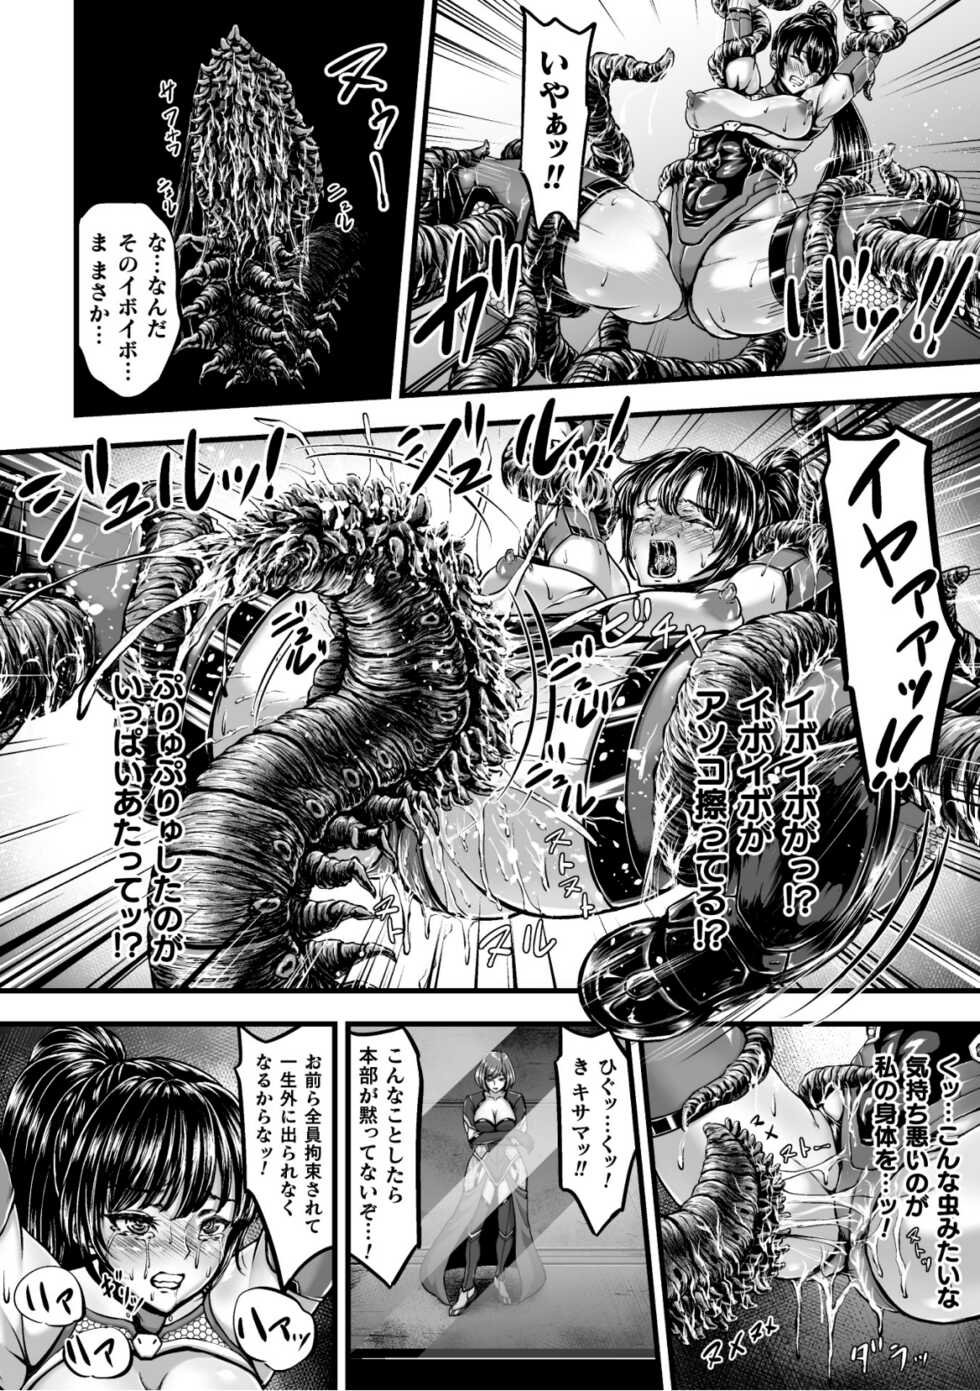 [yuyu] Kangoku Tentacle Battleship Episode 1 - Page 14